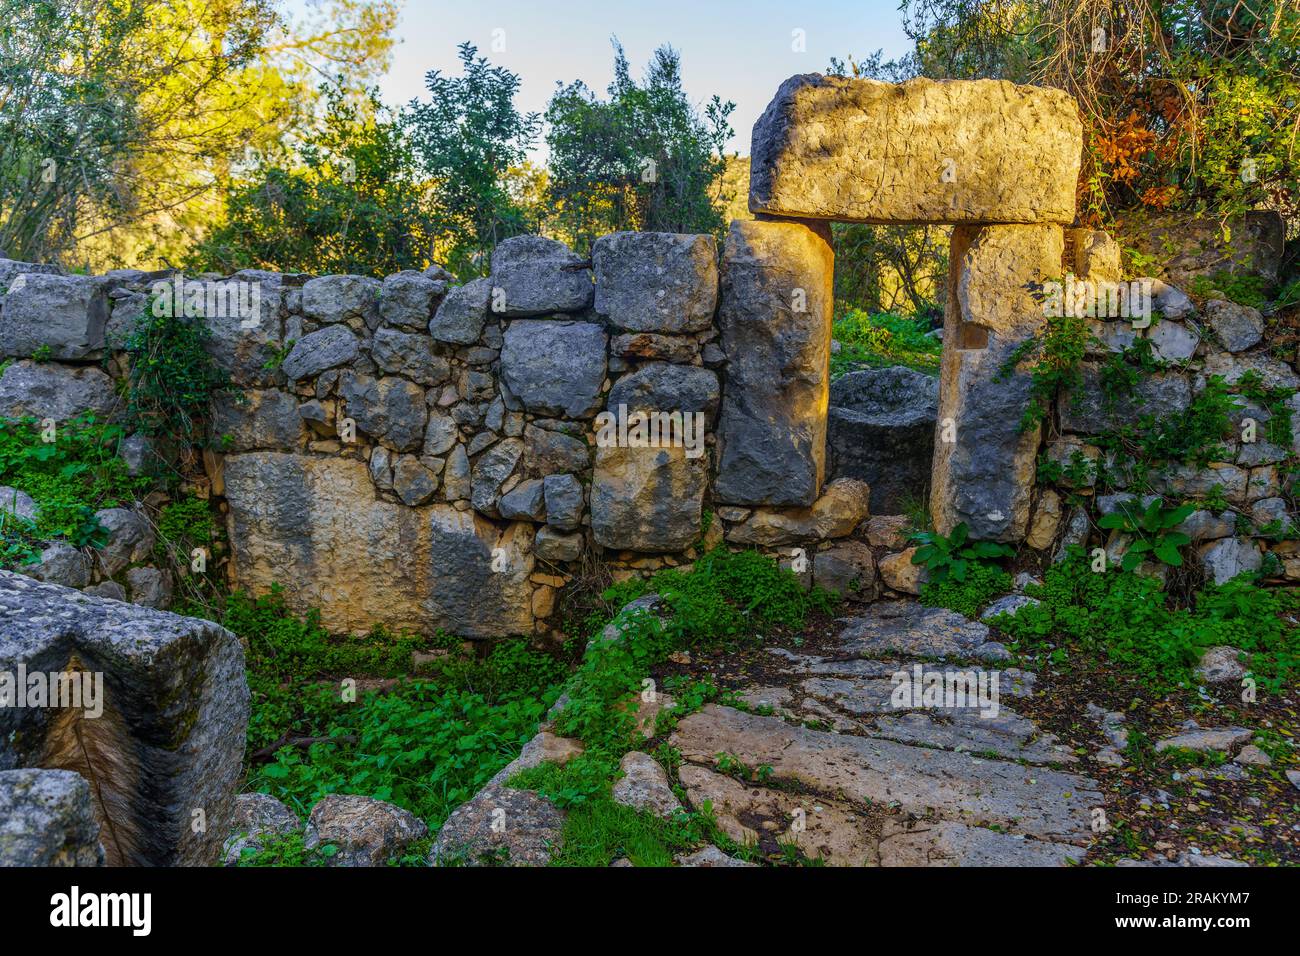 Vista di una pressa petrolifera dell'epoca bizantina, con un cartello esplicativo, nel sito archeologico di Khurvat (rovine) Daniela, alta Galilea, Israele settentrionale Foto Stock